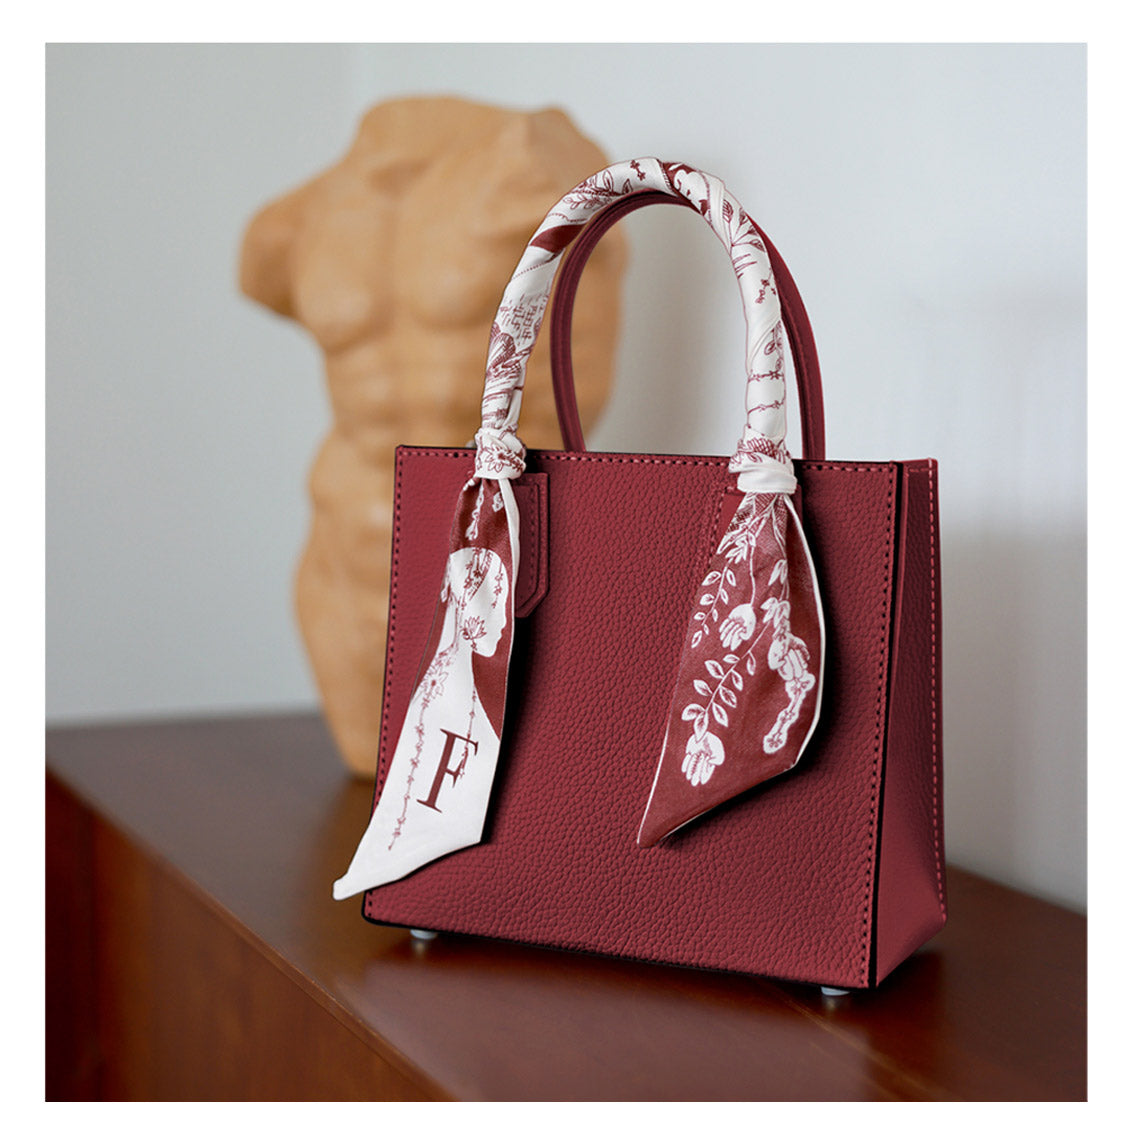 POPSEWING® Top Grain Leather Mini Tote Handbag DIY Kit